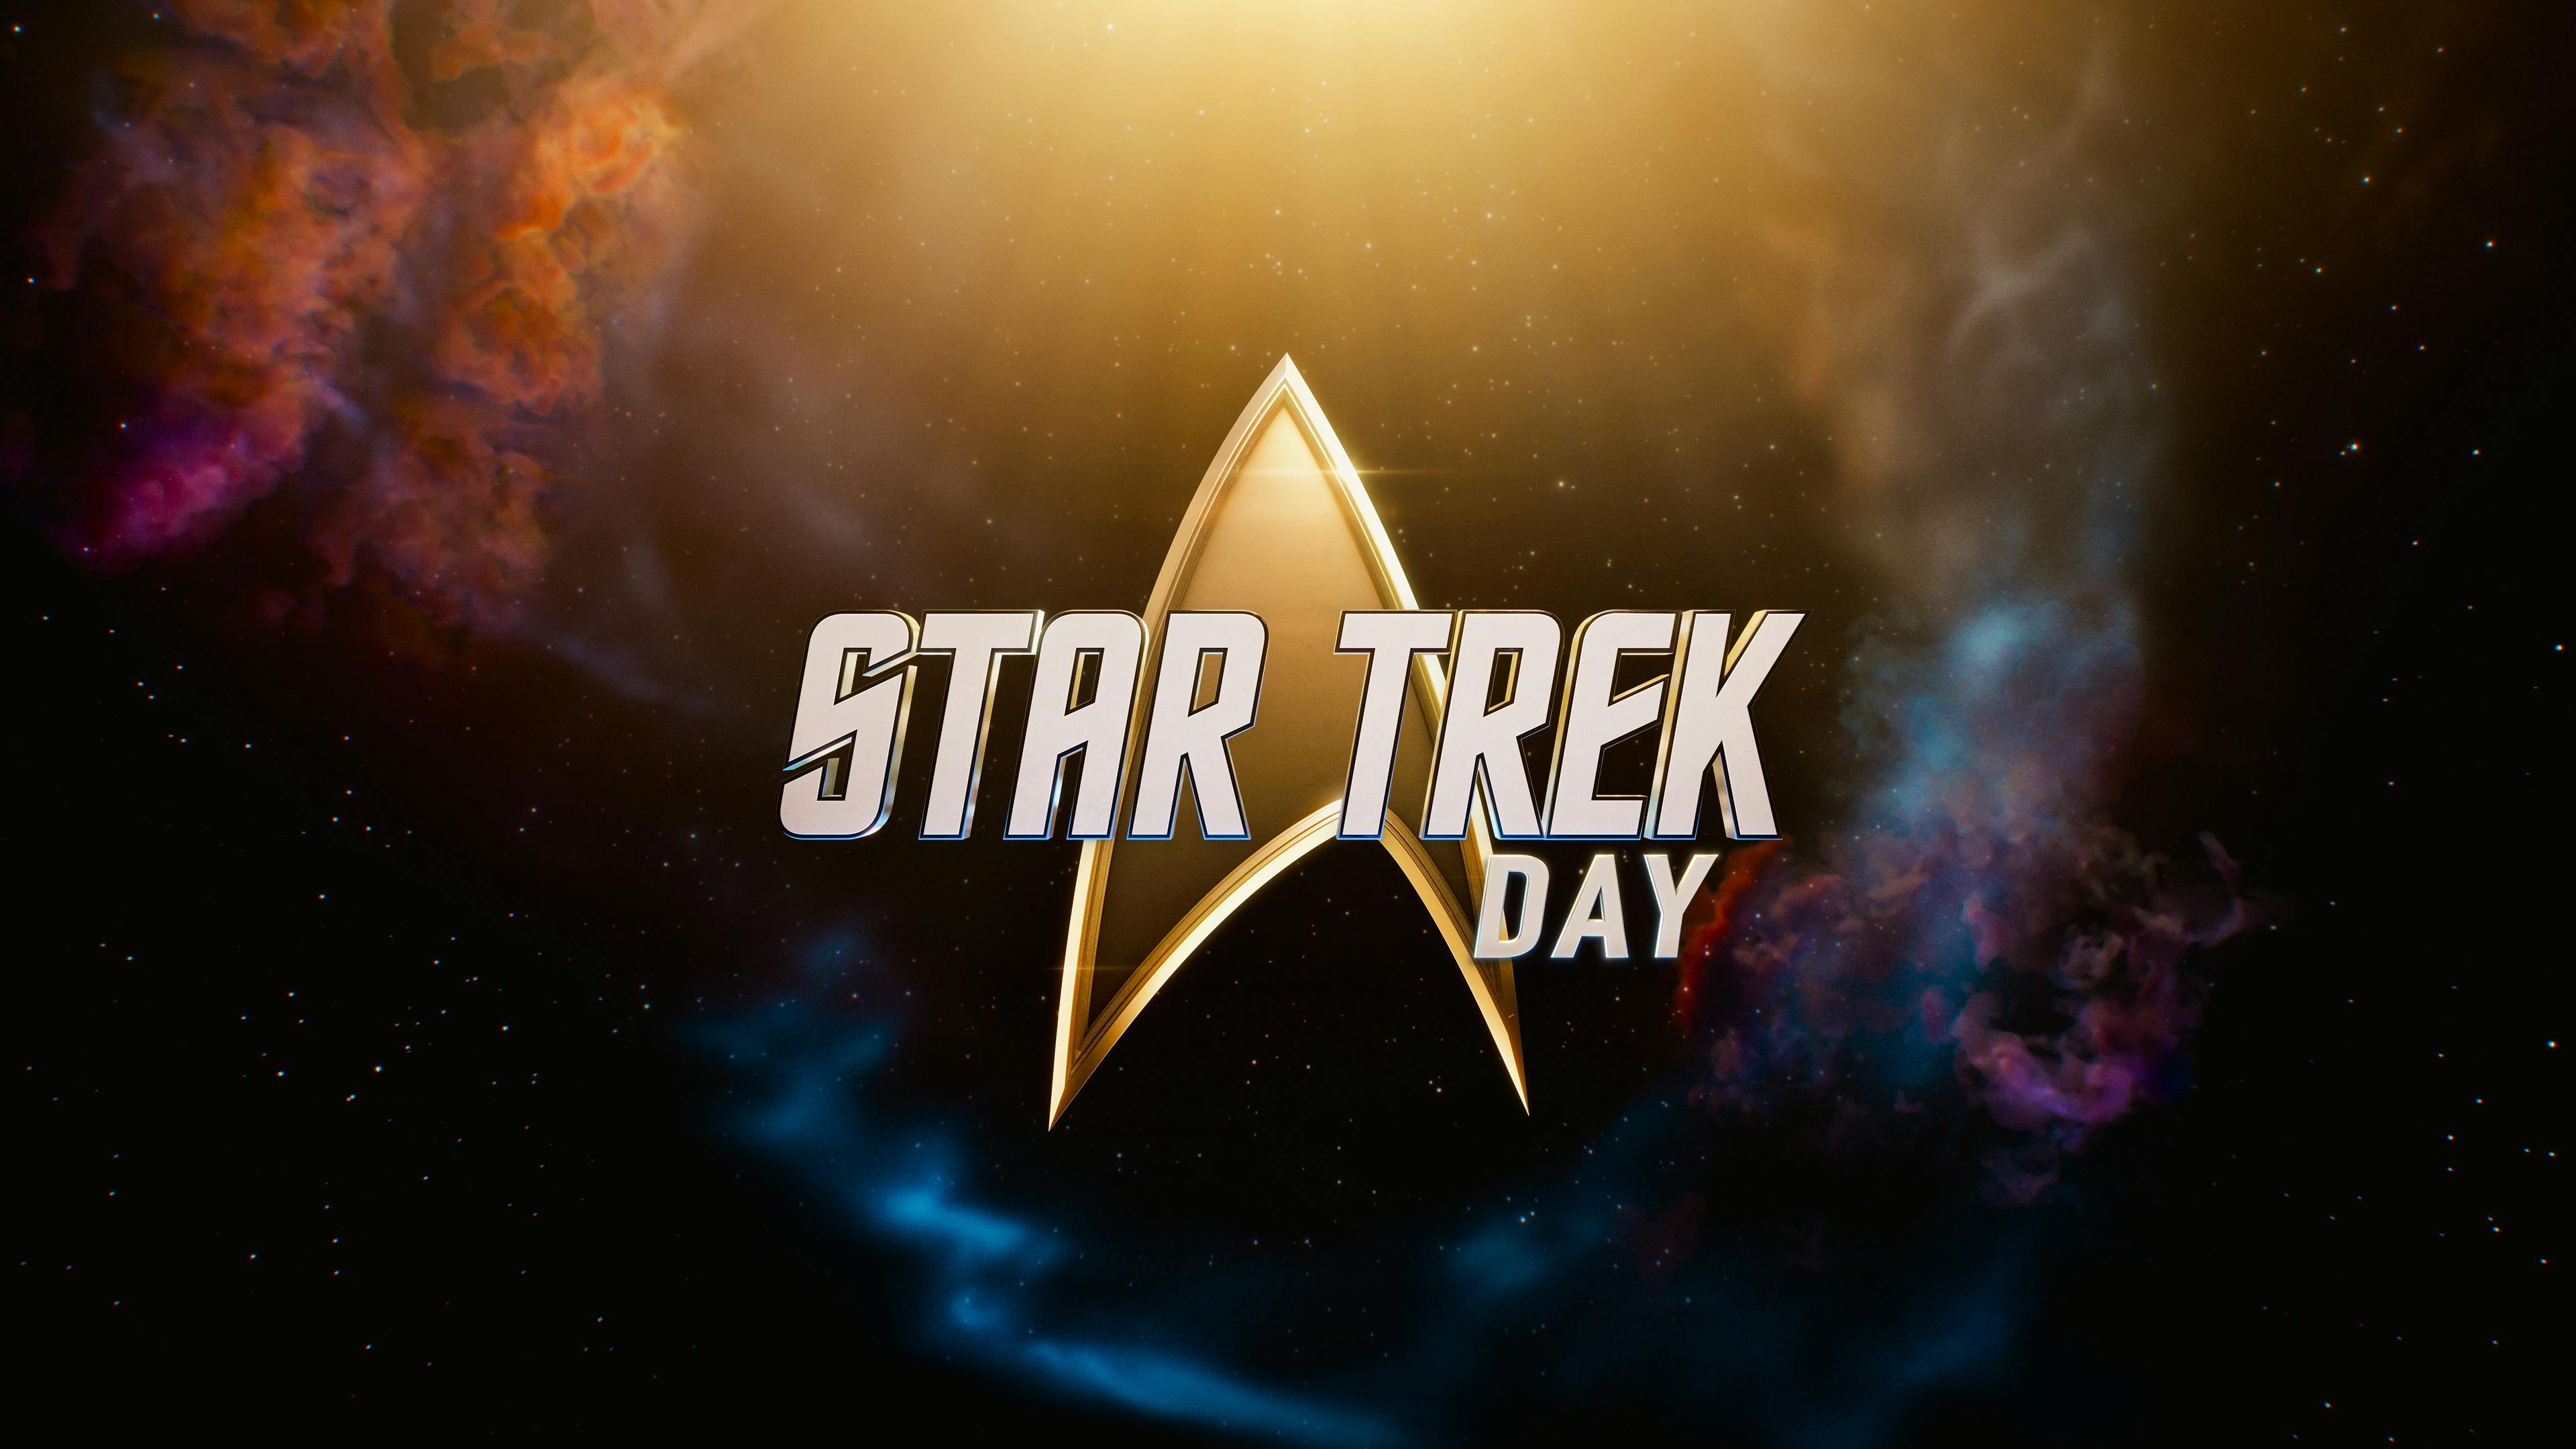 Star Trek Day logo against a nebula background